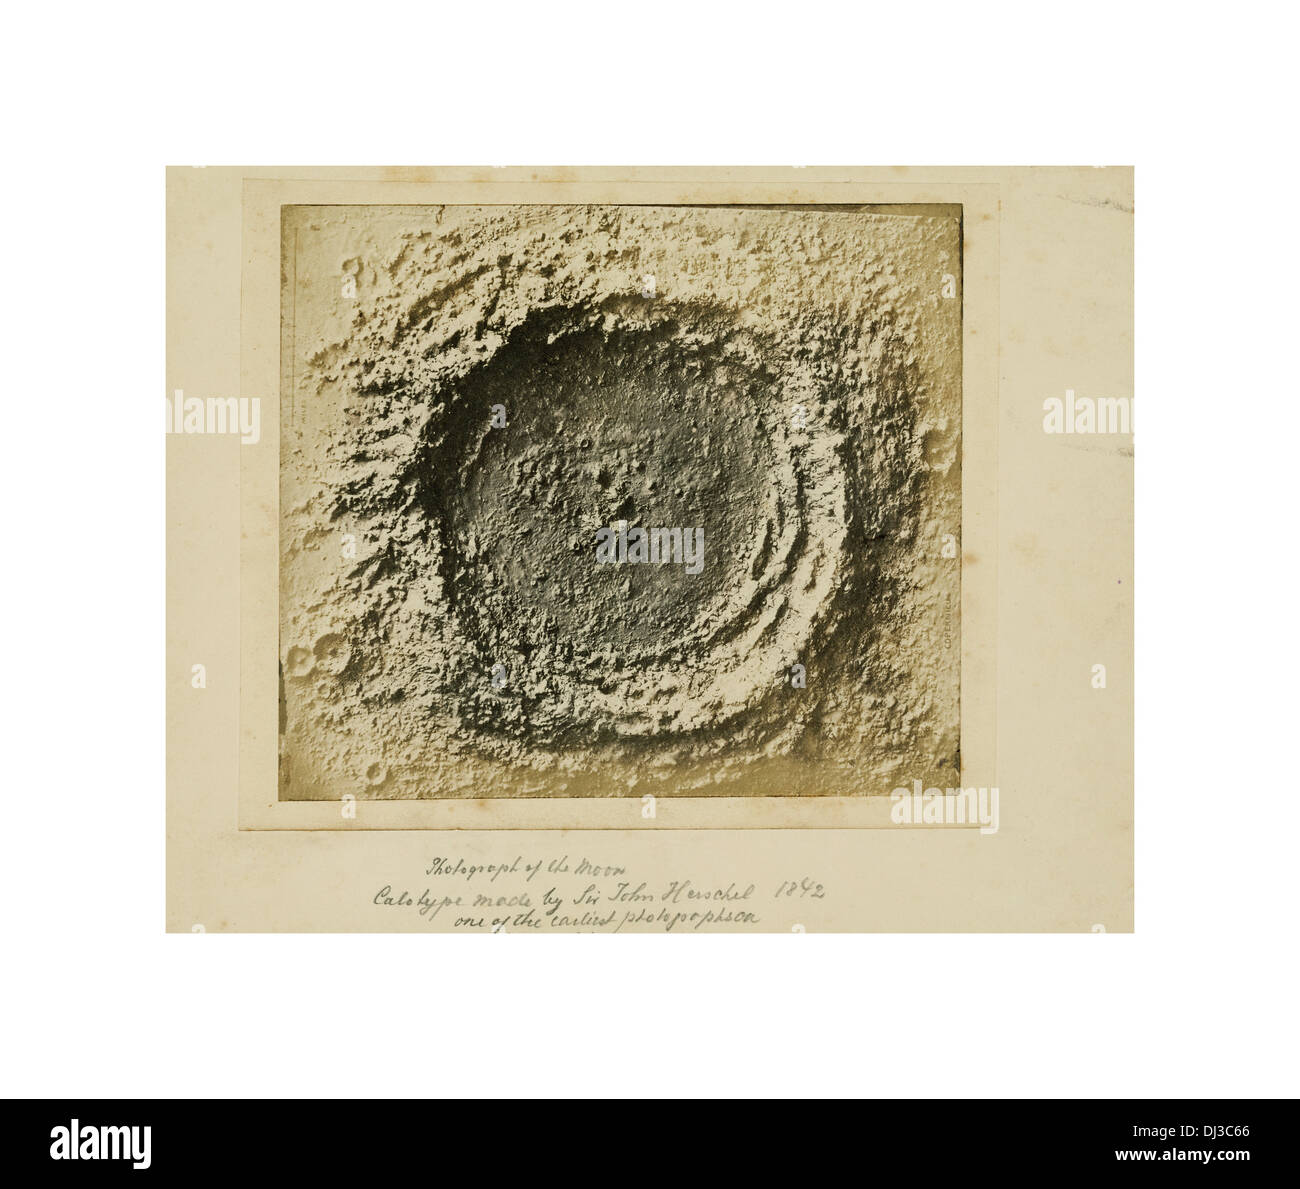 Au début historique Calotype photographie de la lune par Sir John Herschel 1842 Banque D'Images